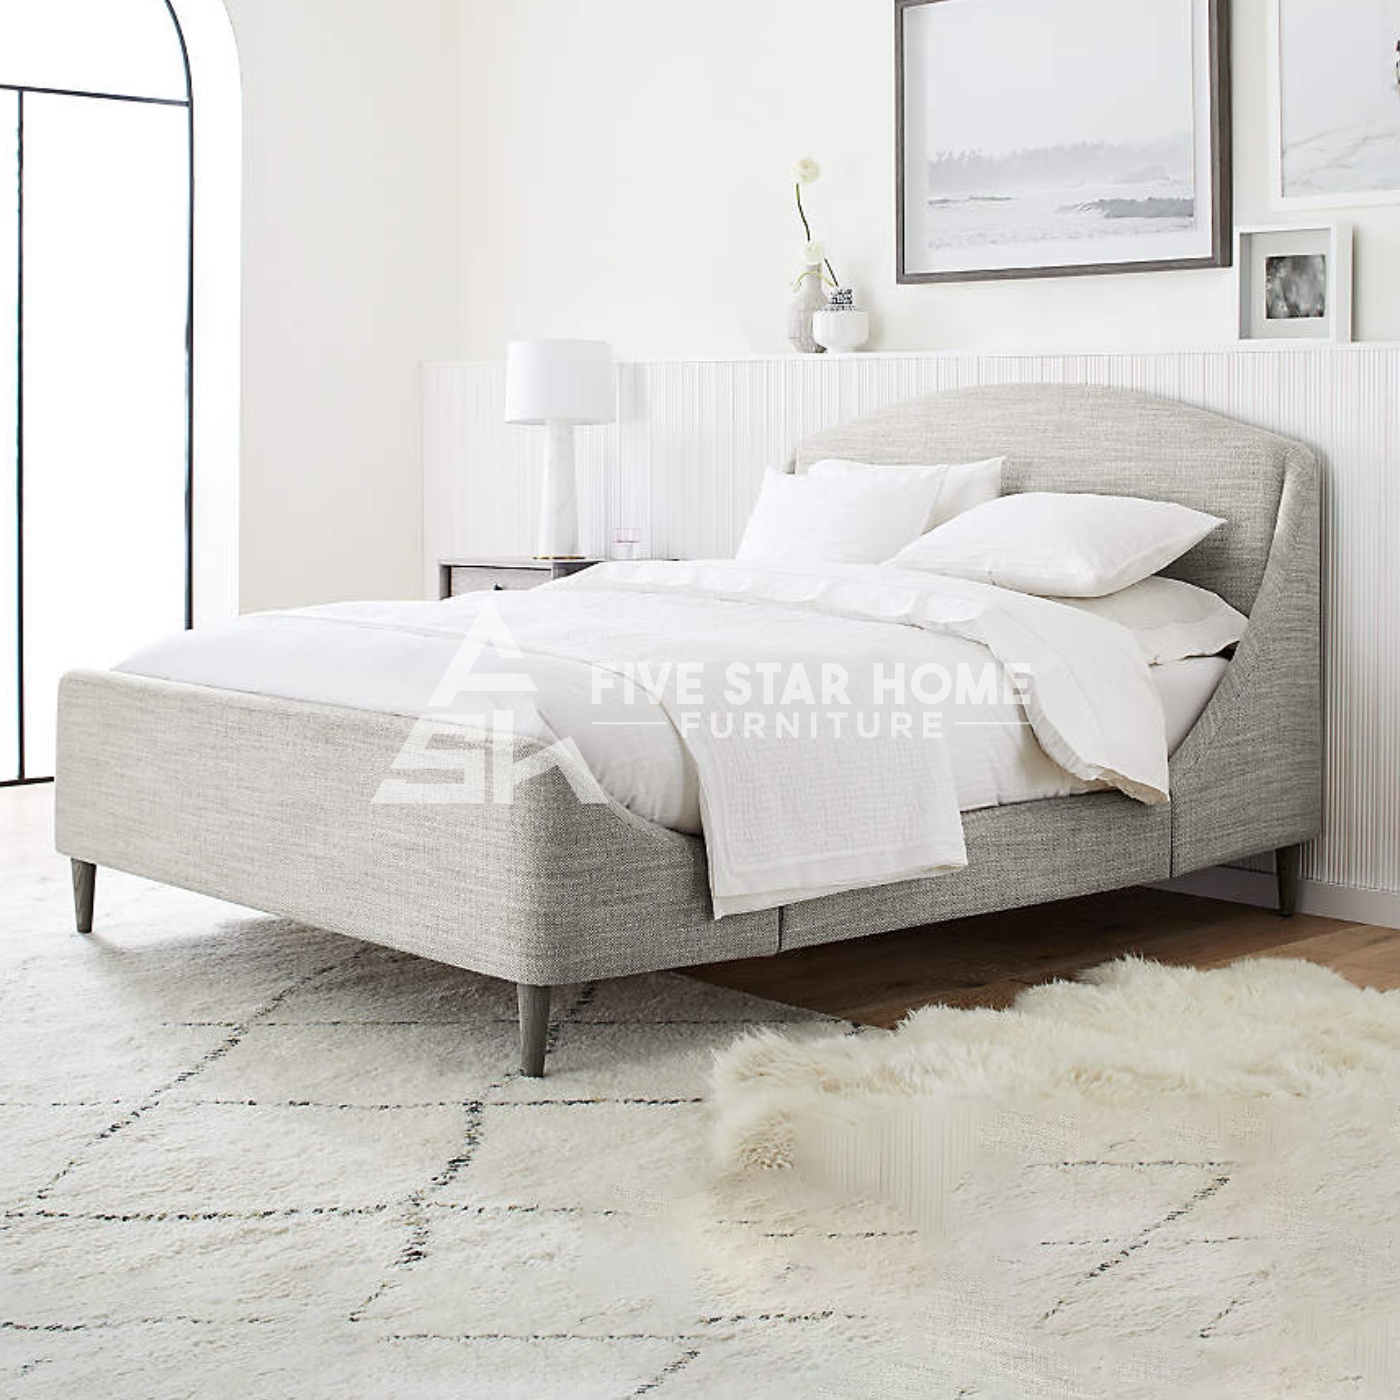 5 Star Mist Upholstered Bed In Light Gray